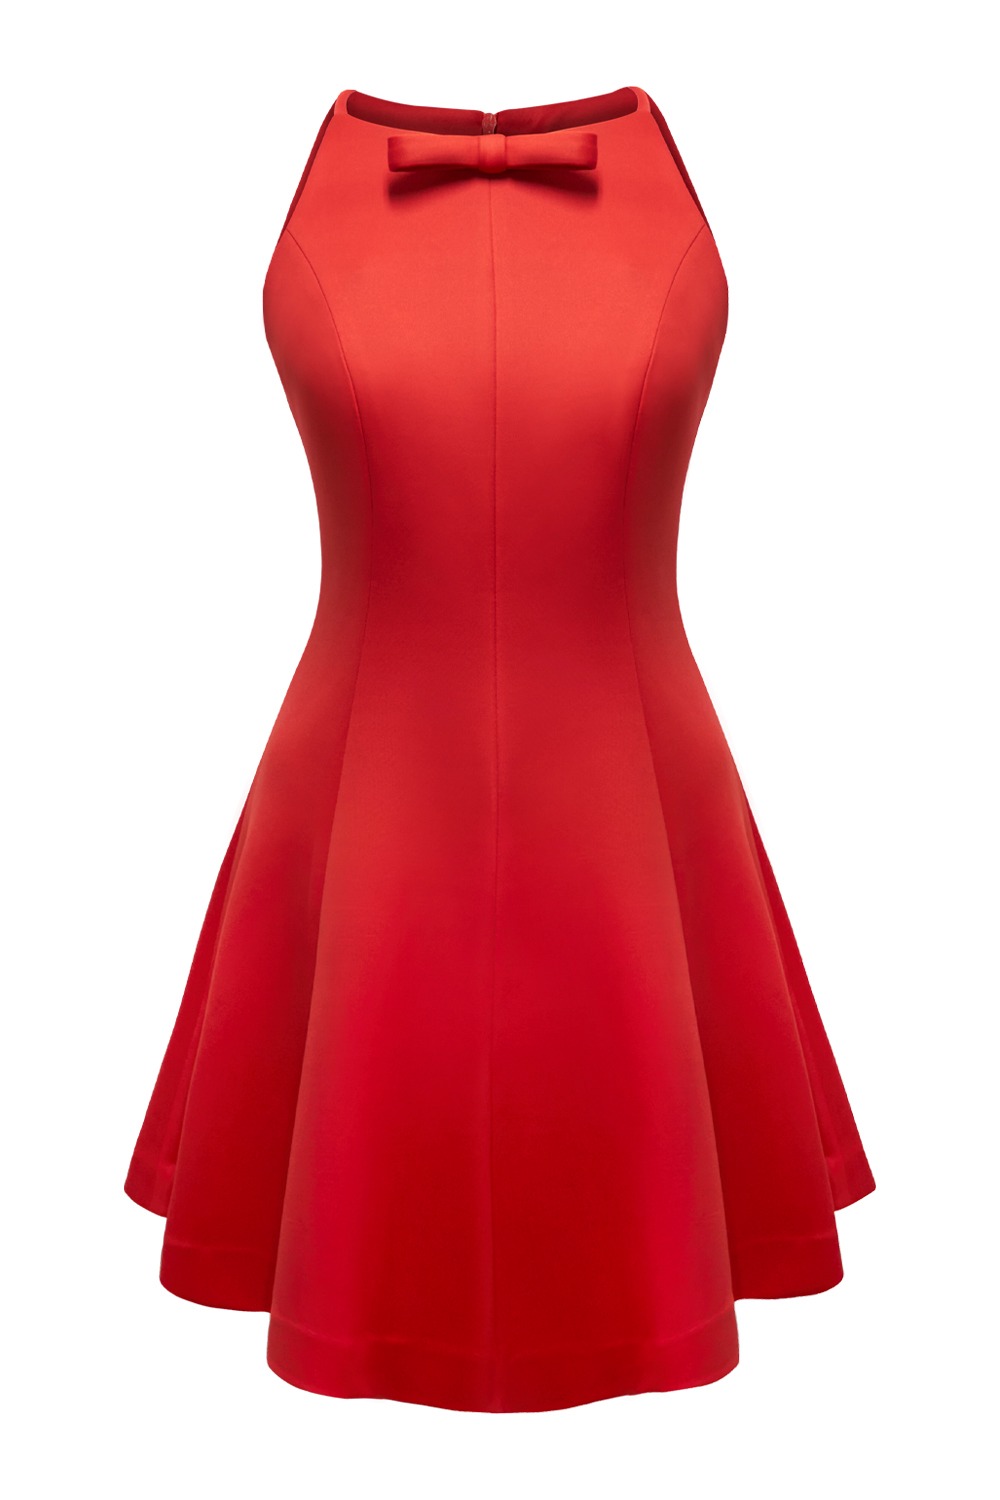 Ribbon tie halter dress (Red)